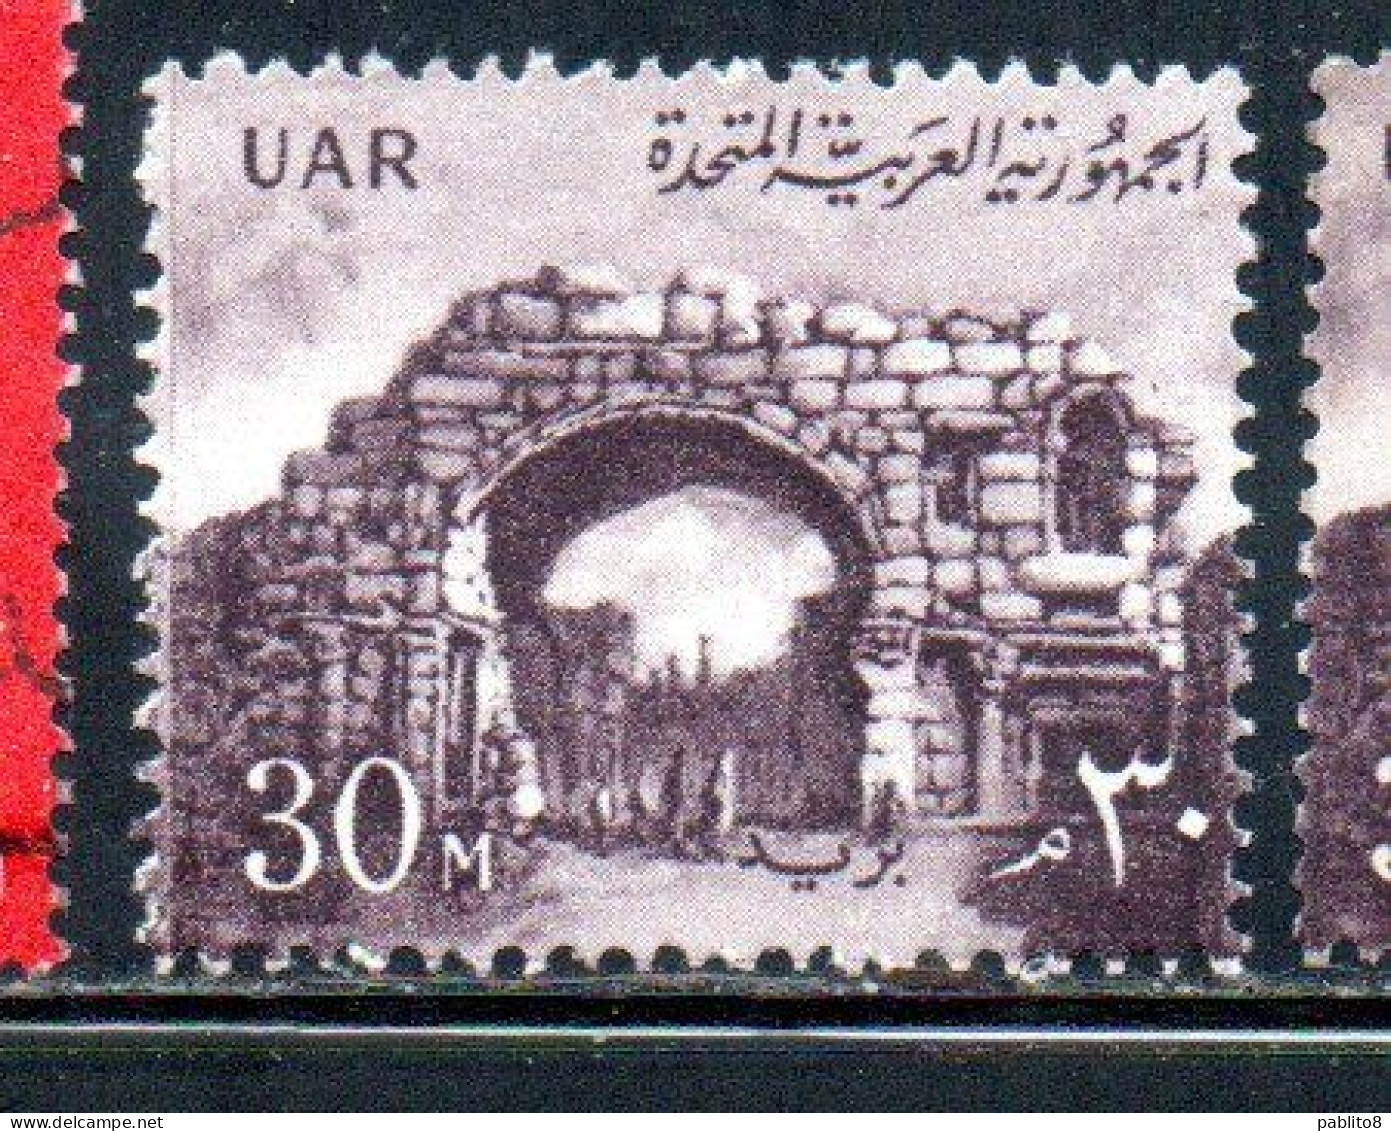 UAR EGYPT EGITTO 1959 1960 ST. SIMON'S GATE BOSRA SYRIA  30m MNH - Nuevos